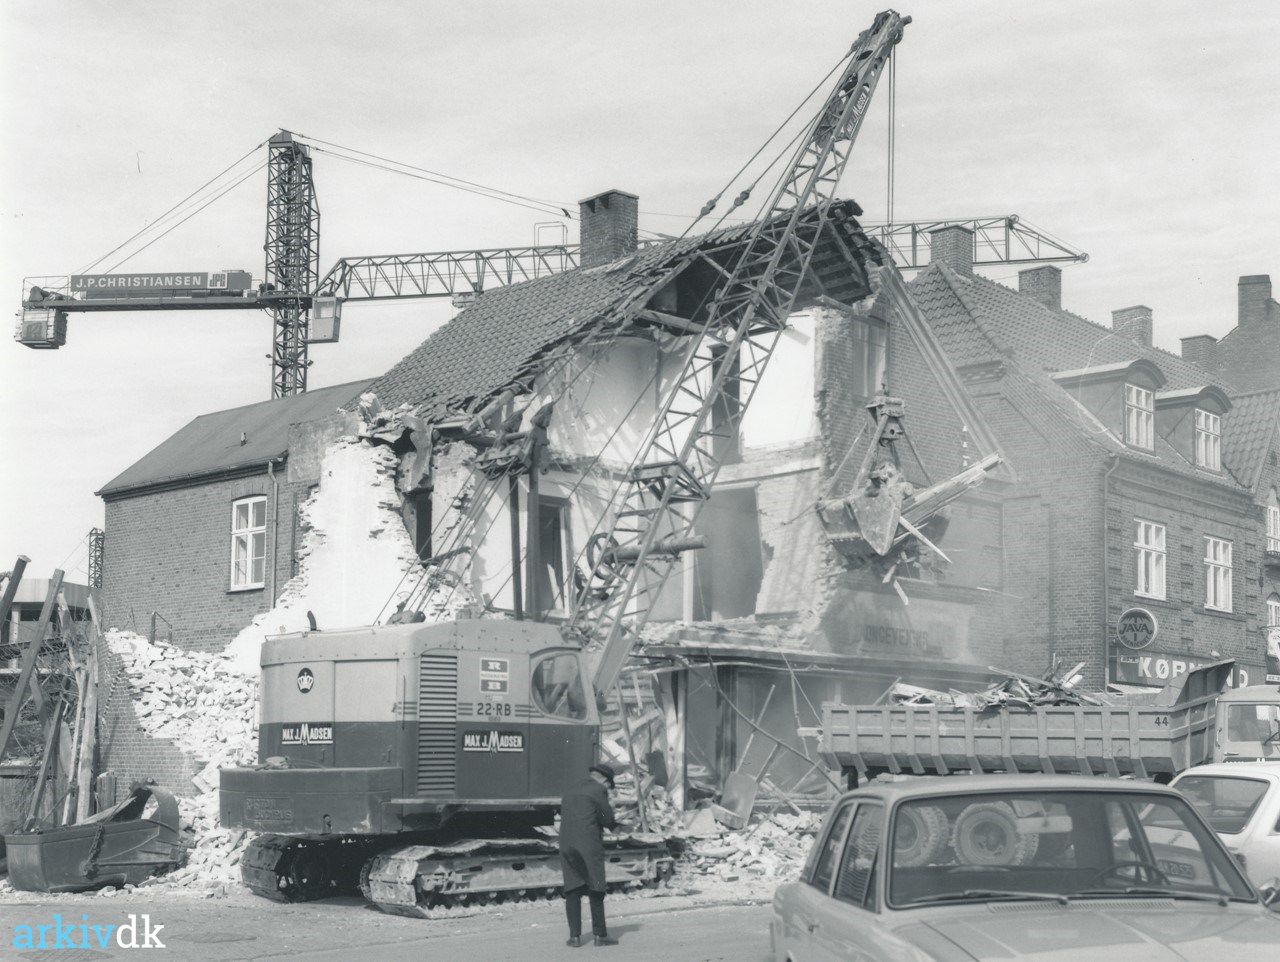 komprimeret marxisme Efterforskning arkiv.dk | Hovedgaden nordlige ende i 1972. Bygningen, der rummede Nesa's  transformertårn samt skoforretningen Hauge Sko nedrives.